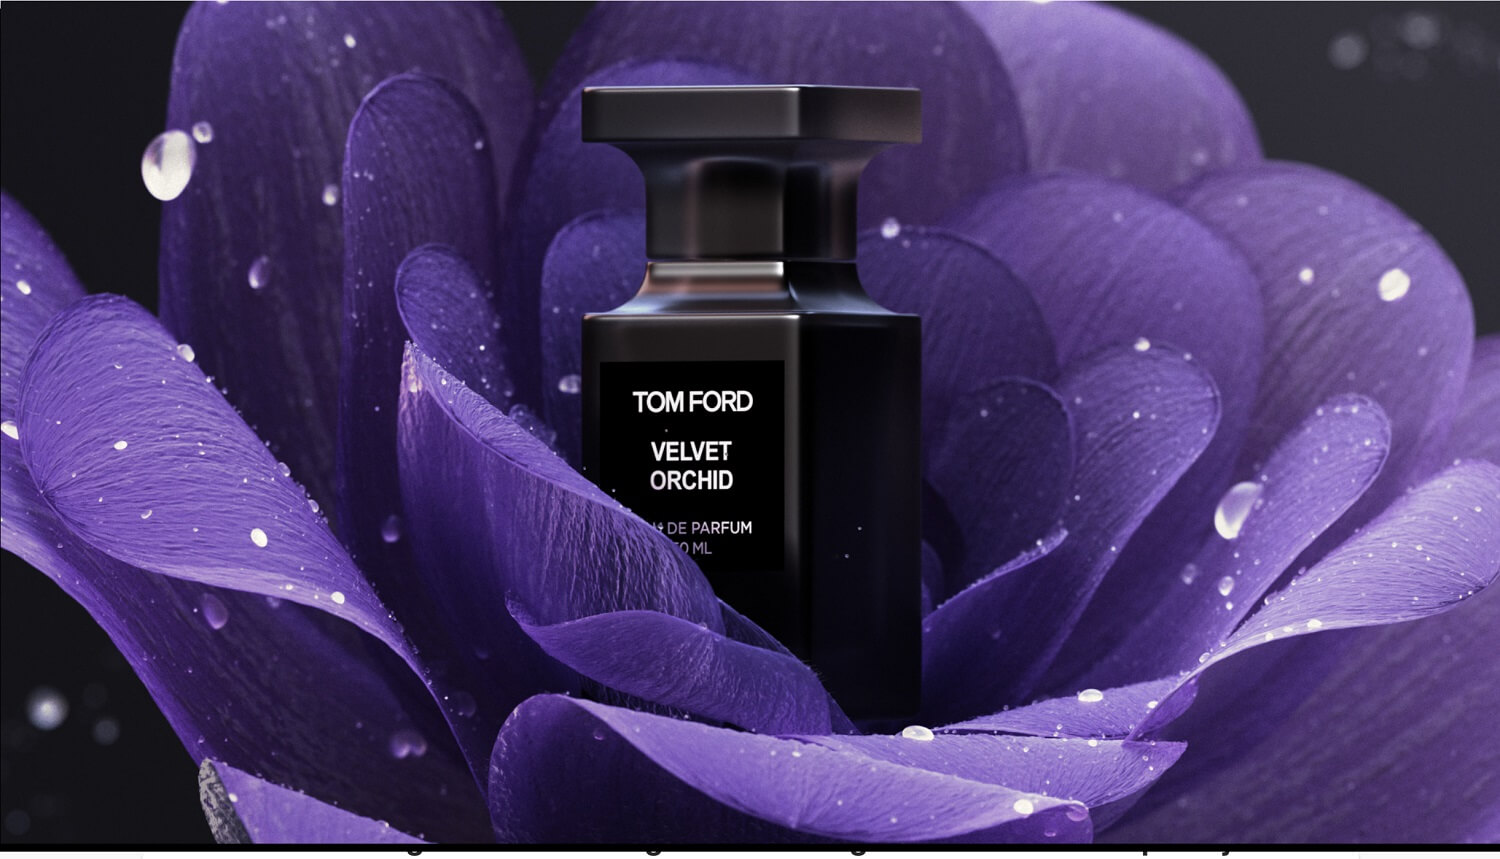 Рекламное CGI-изображение духов Tom Ford в цветке